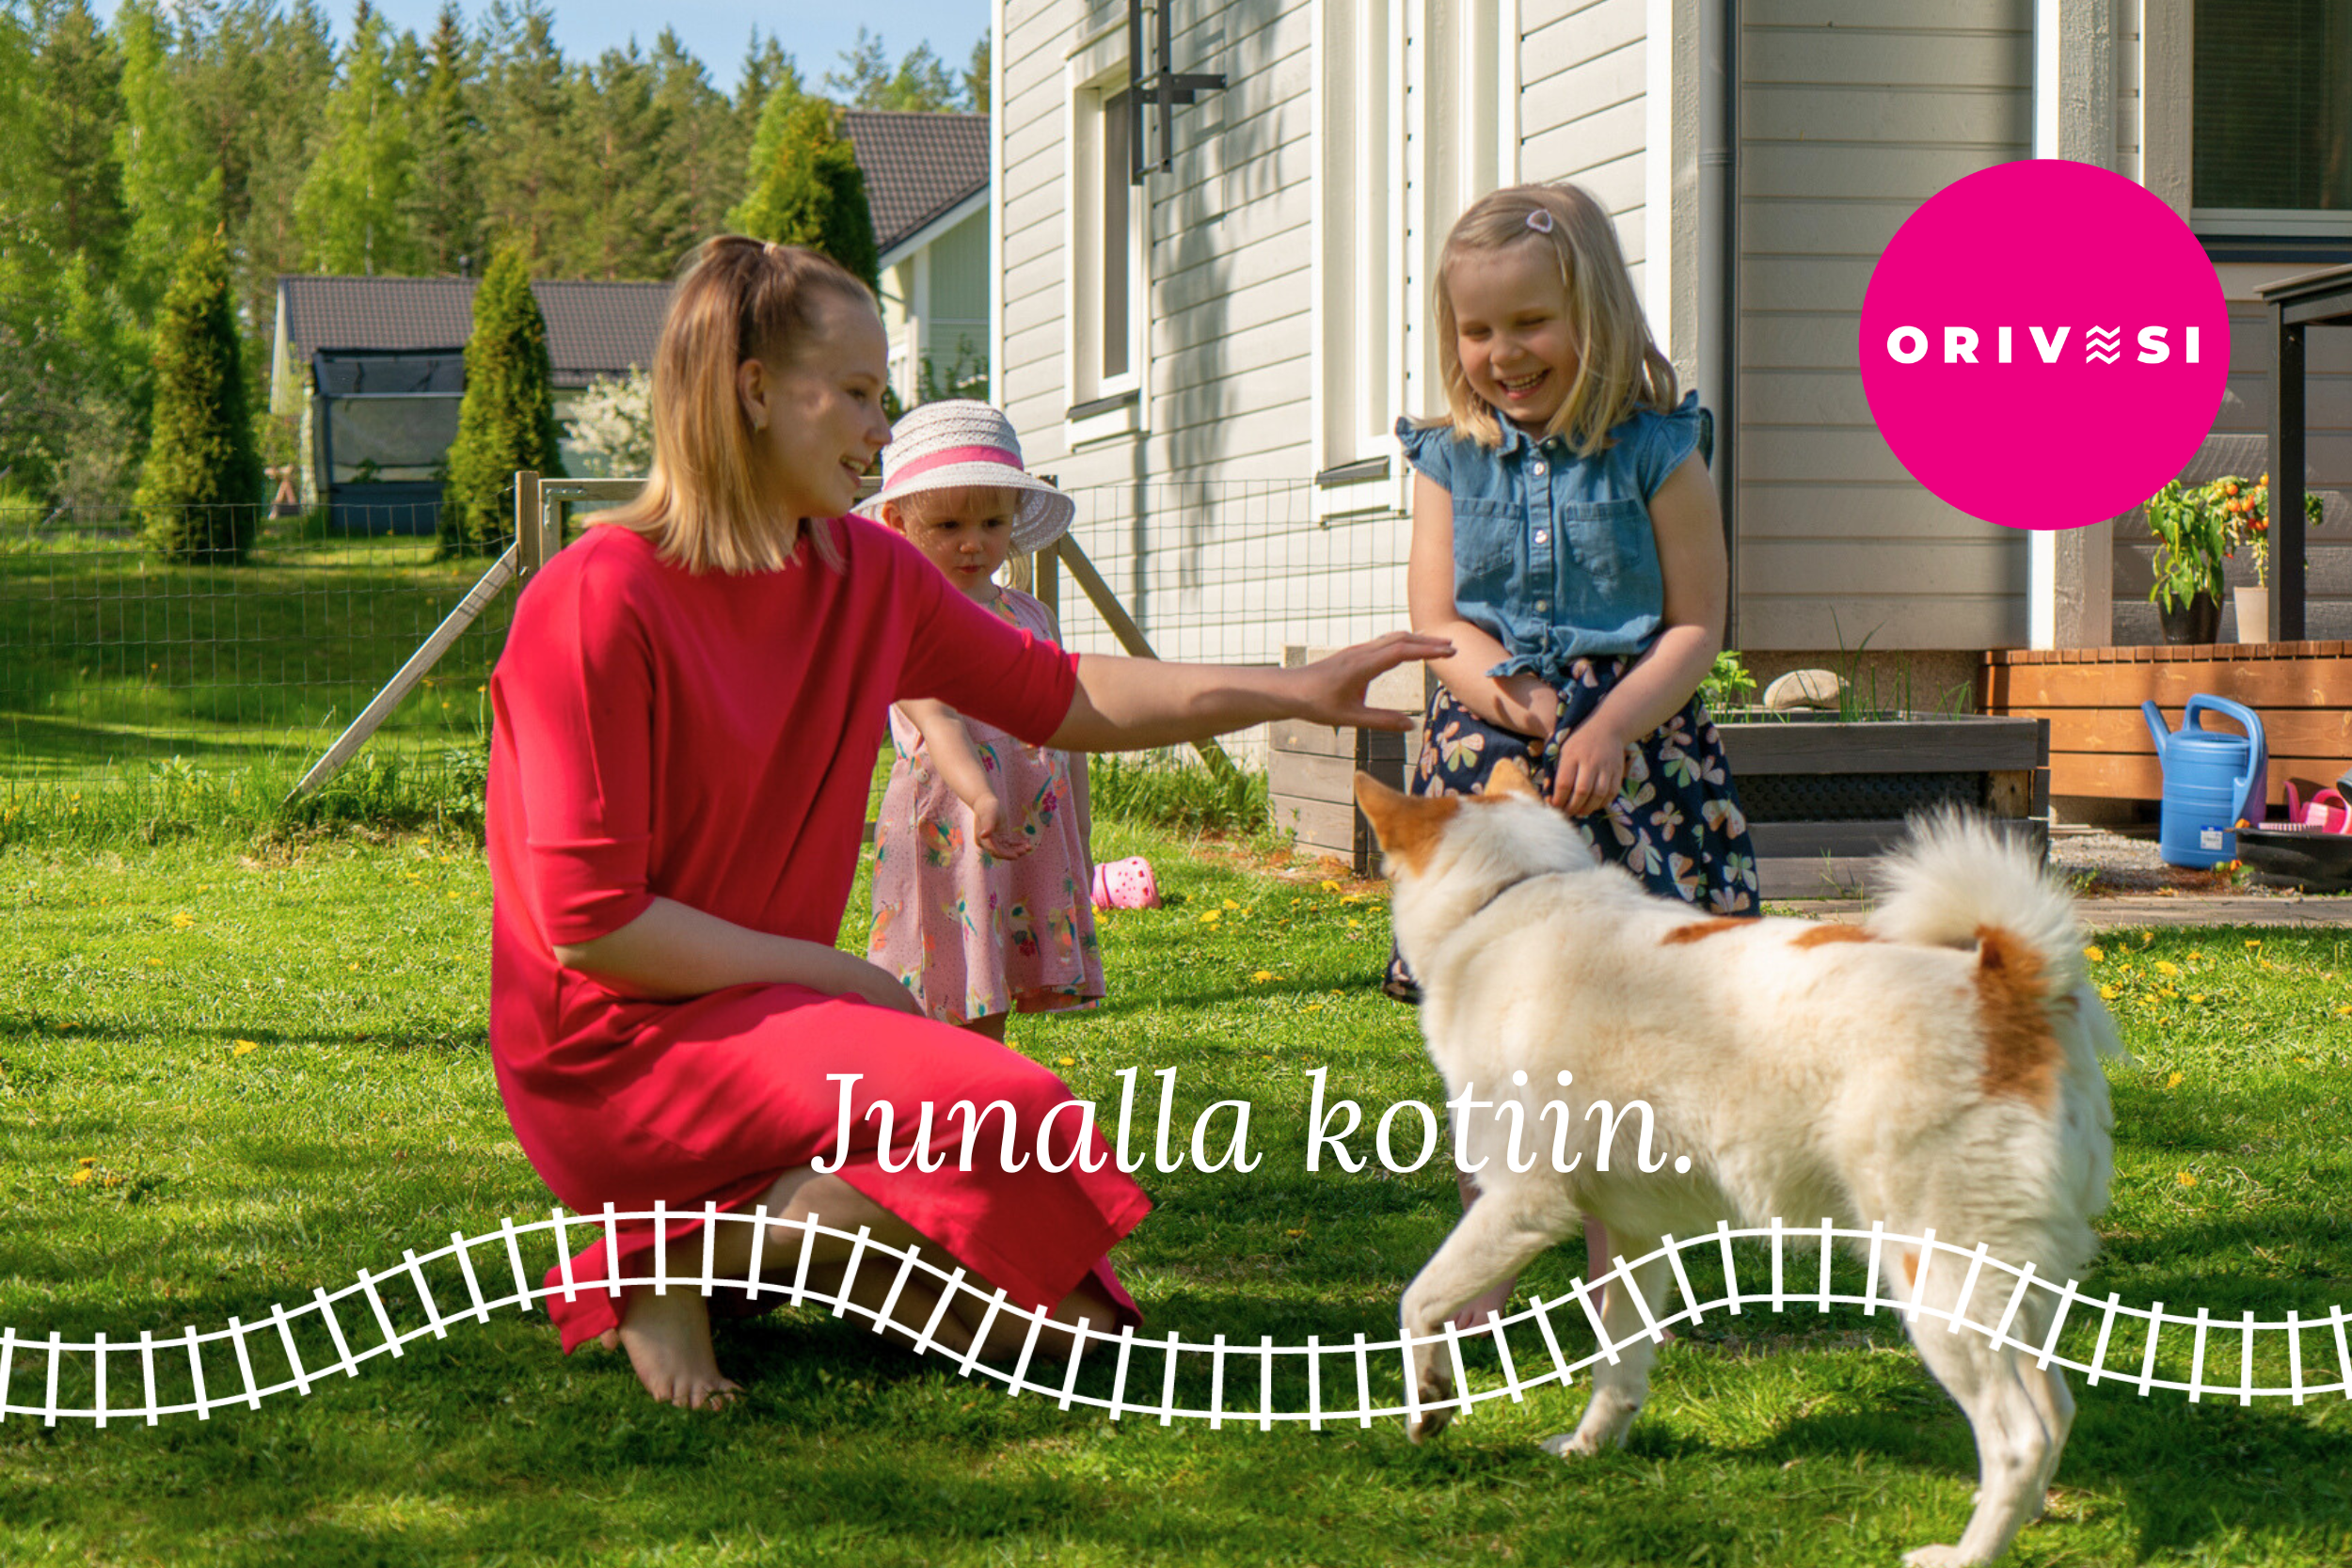 Perhe ja koira omakotitalon pihalla, junaradan kuva ja teksti Junalla kotiin.